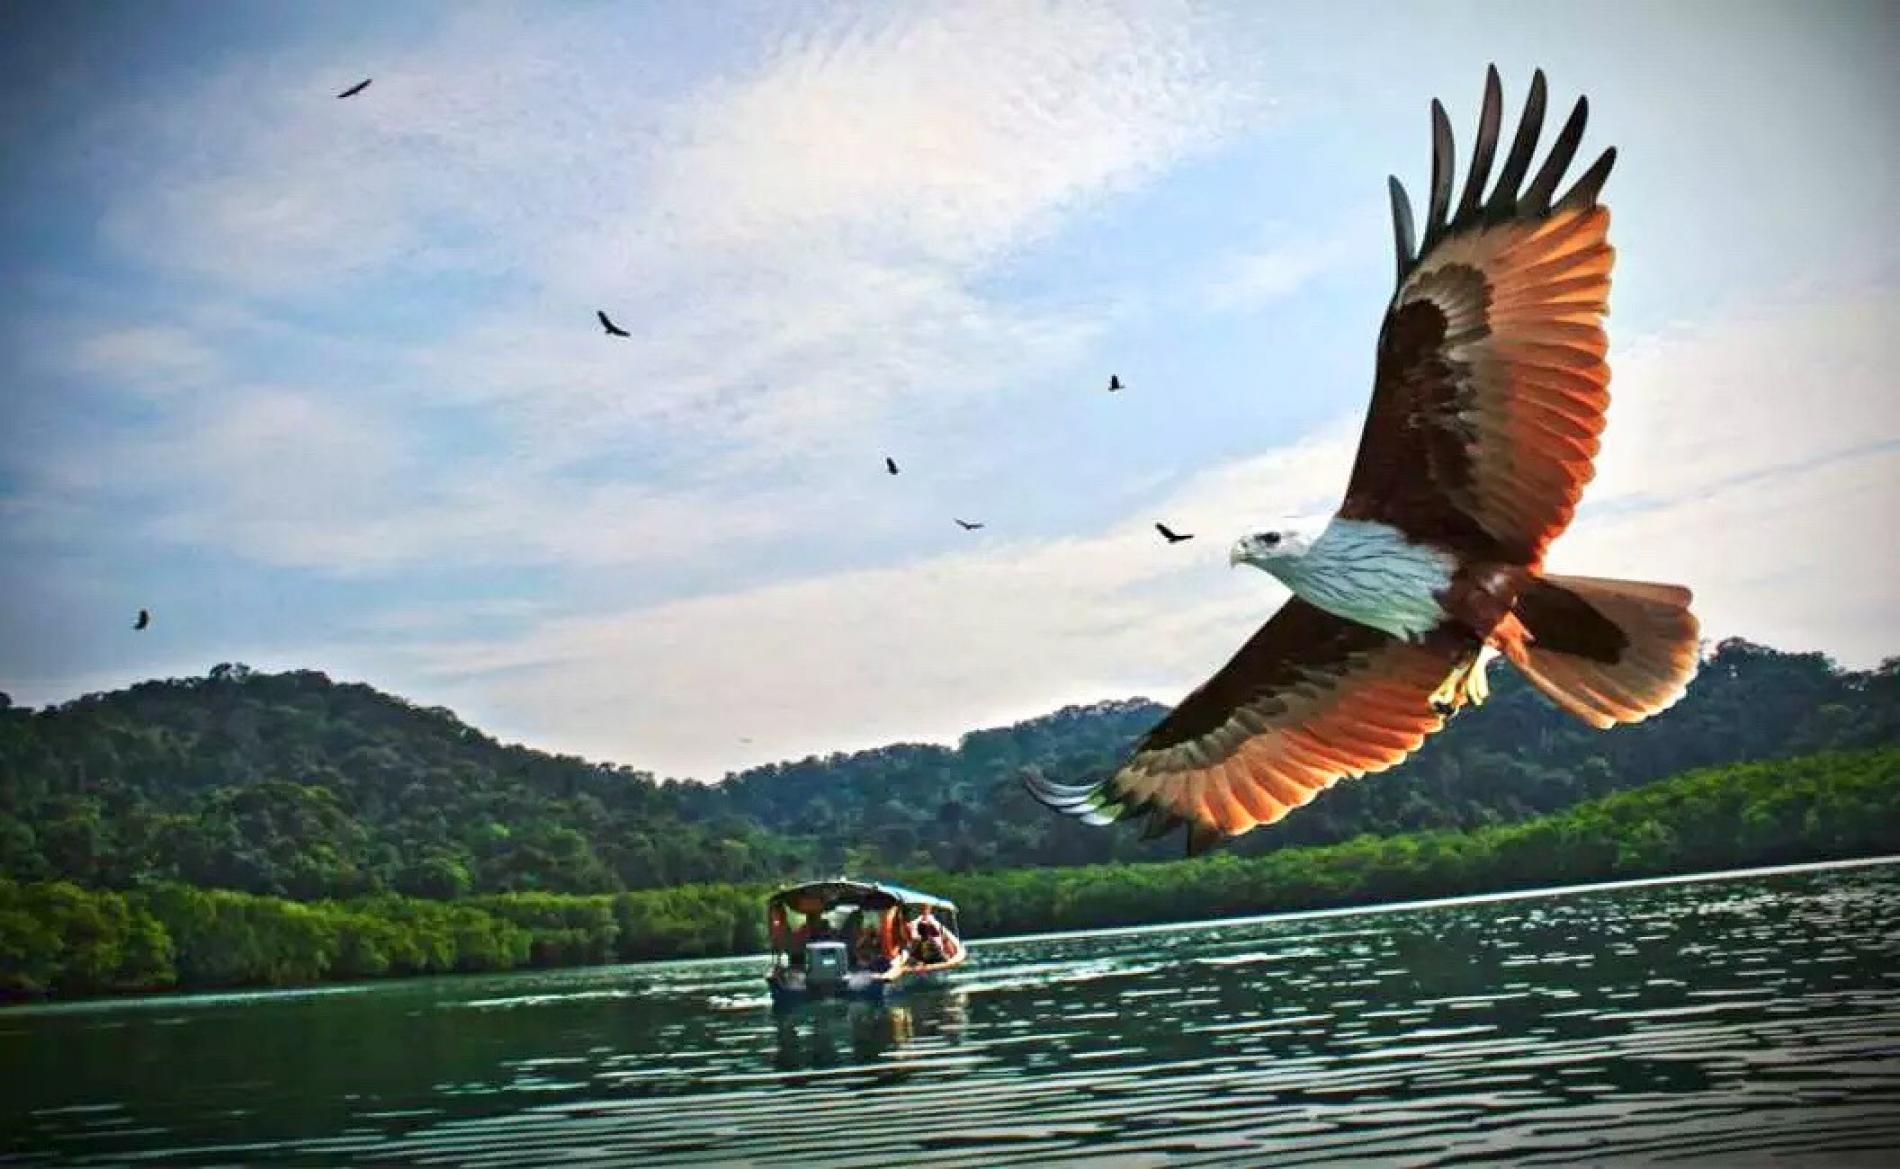 Chim đại bàng - biểu tượng của Langkawi trong chuyến đi tìm hiểu về các loài chim cư trú